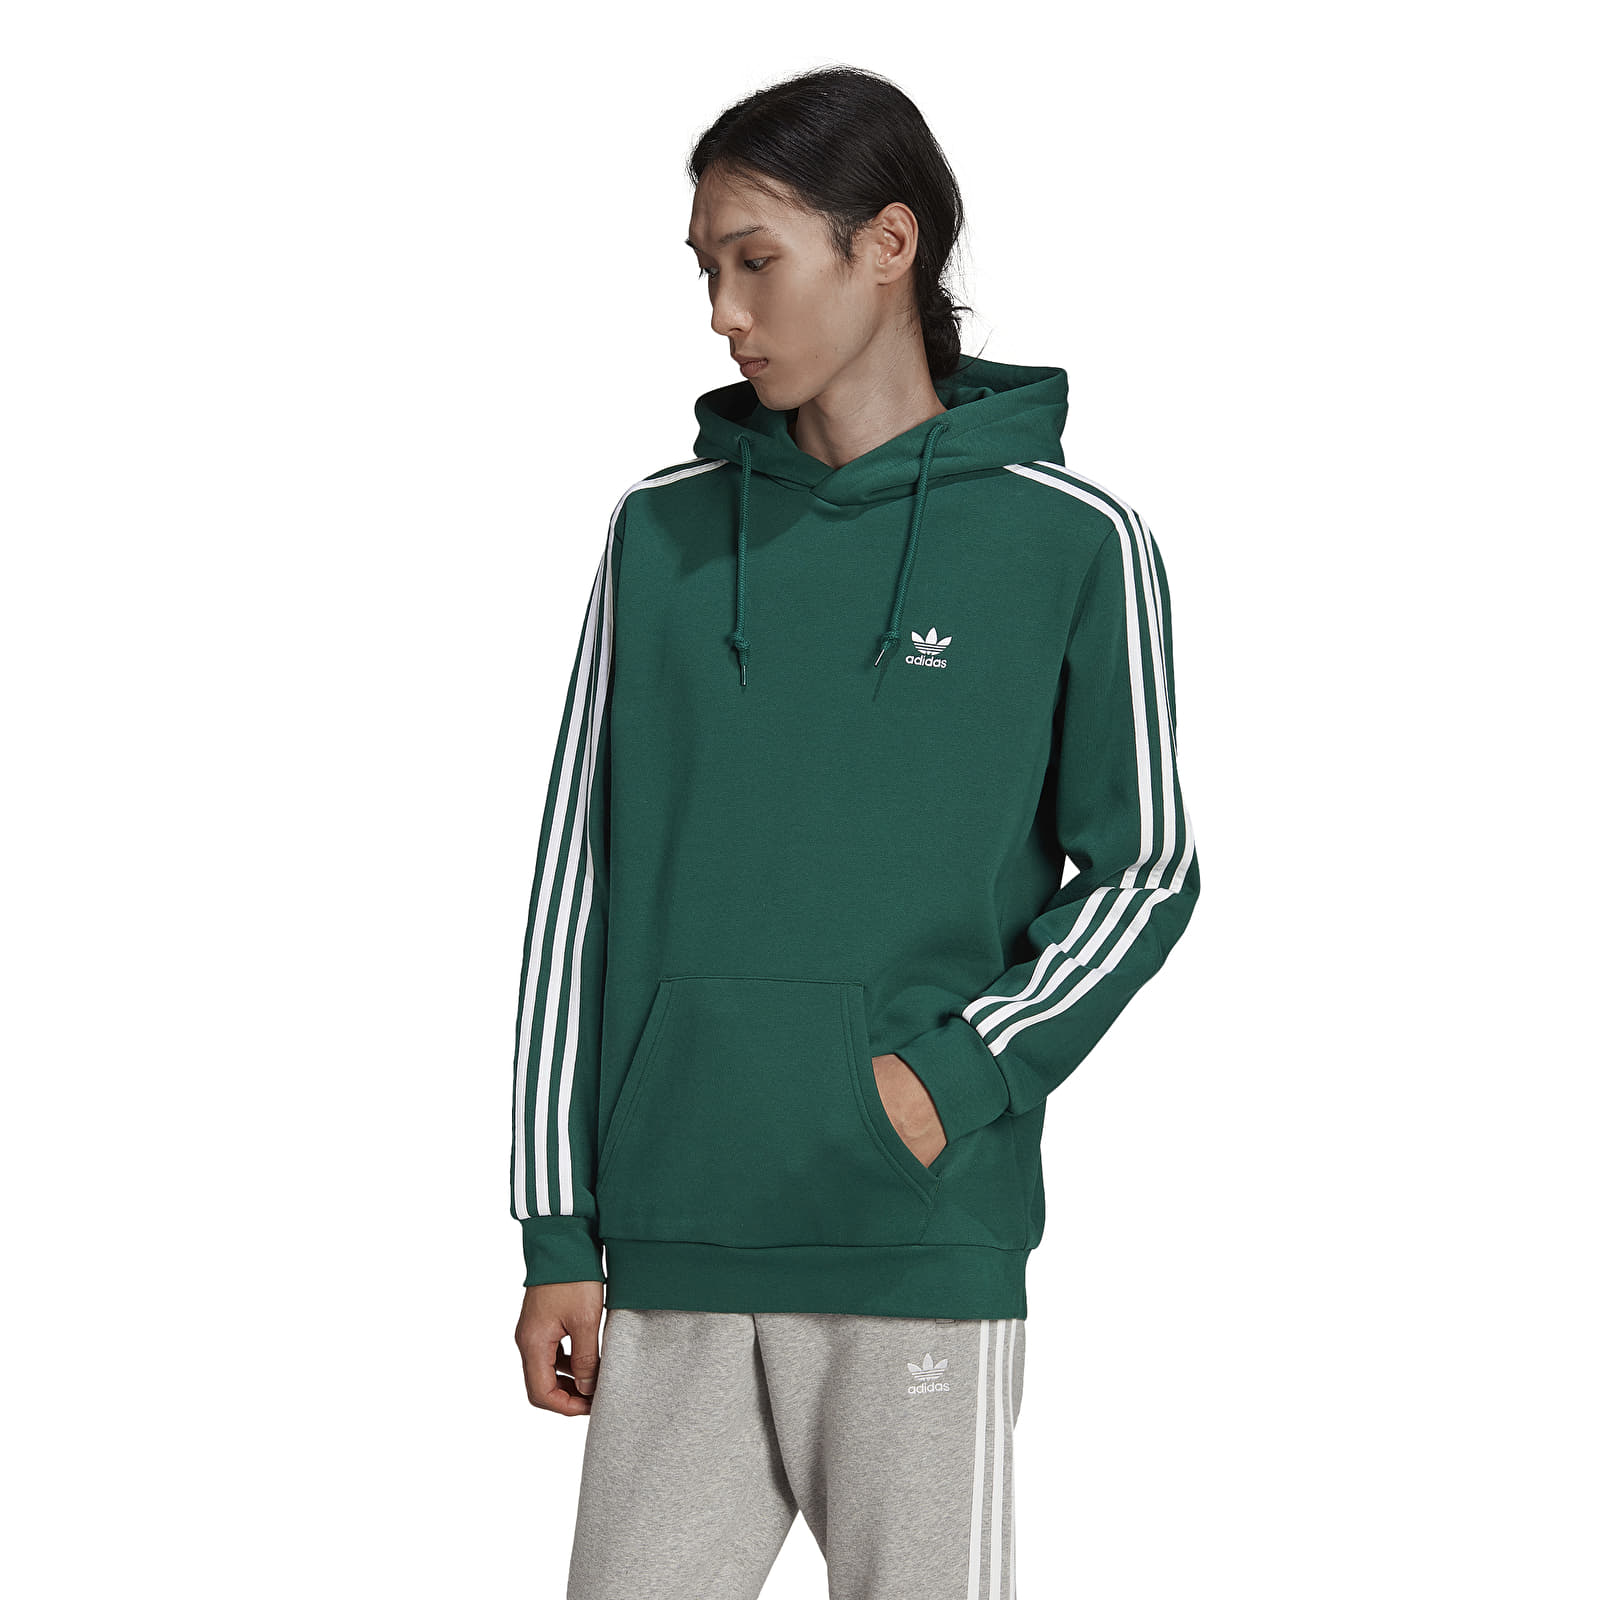 Originals Hoodies sweatshirts | 3-Stripes Green Footshop adidas Hoodie and